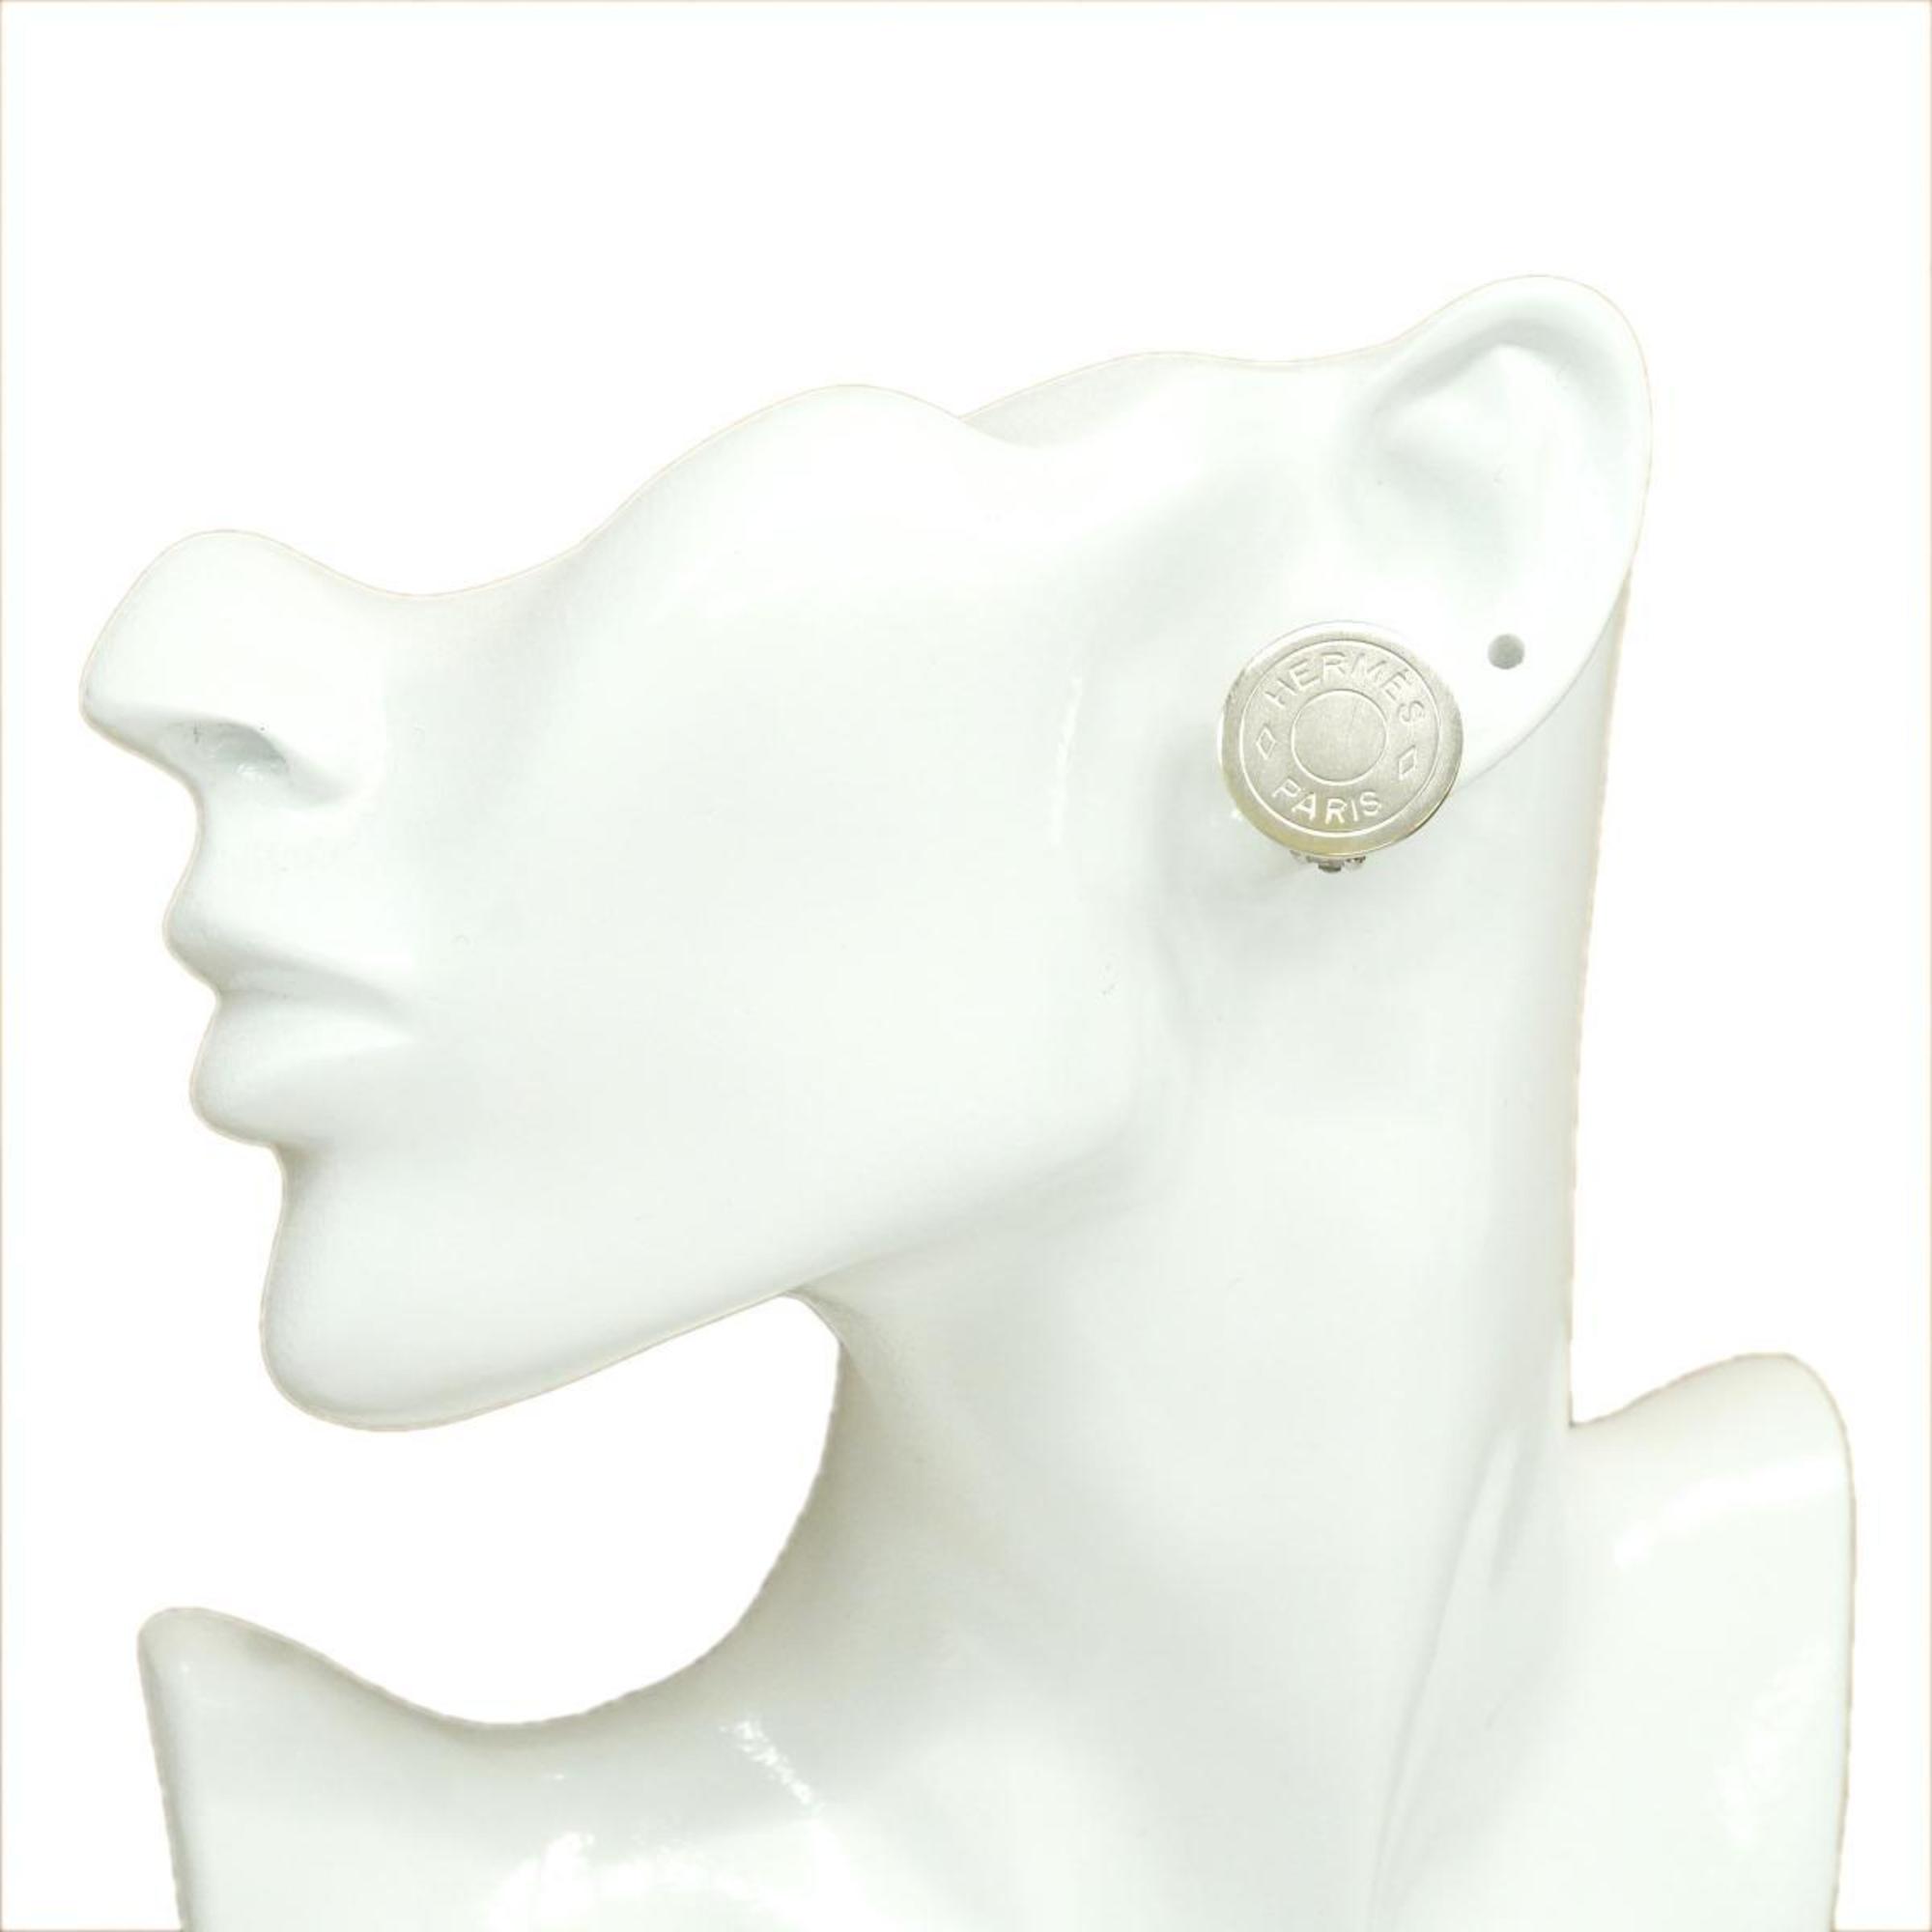 Hermes earrings, serie, metal, silver, women's